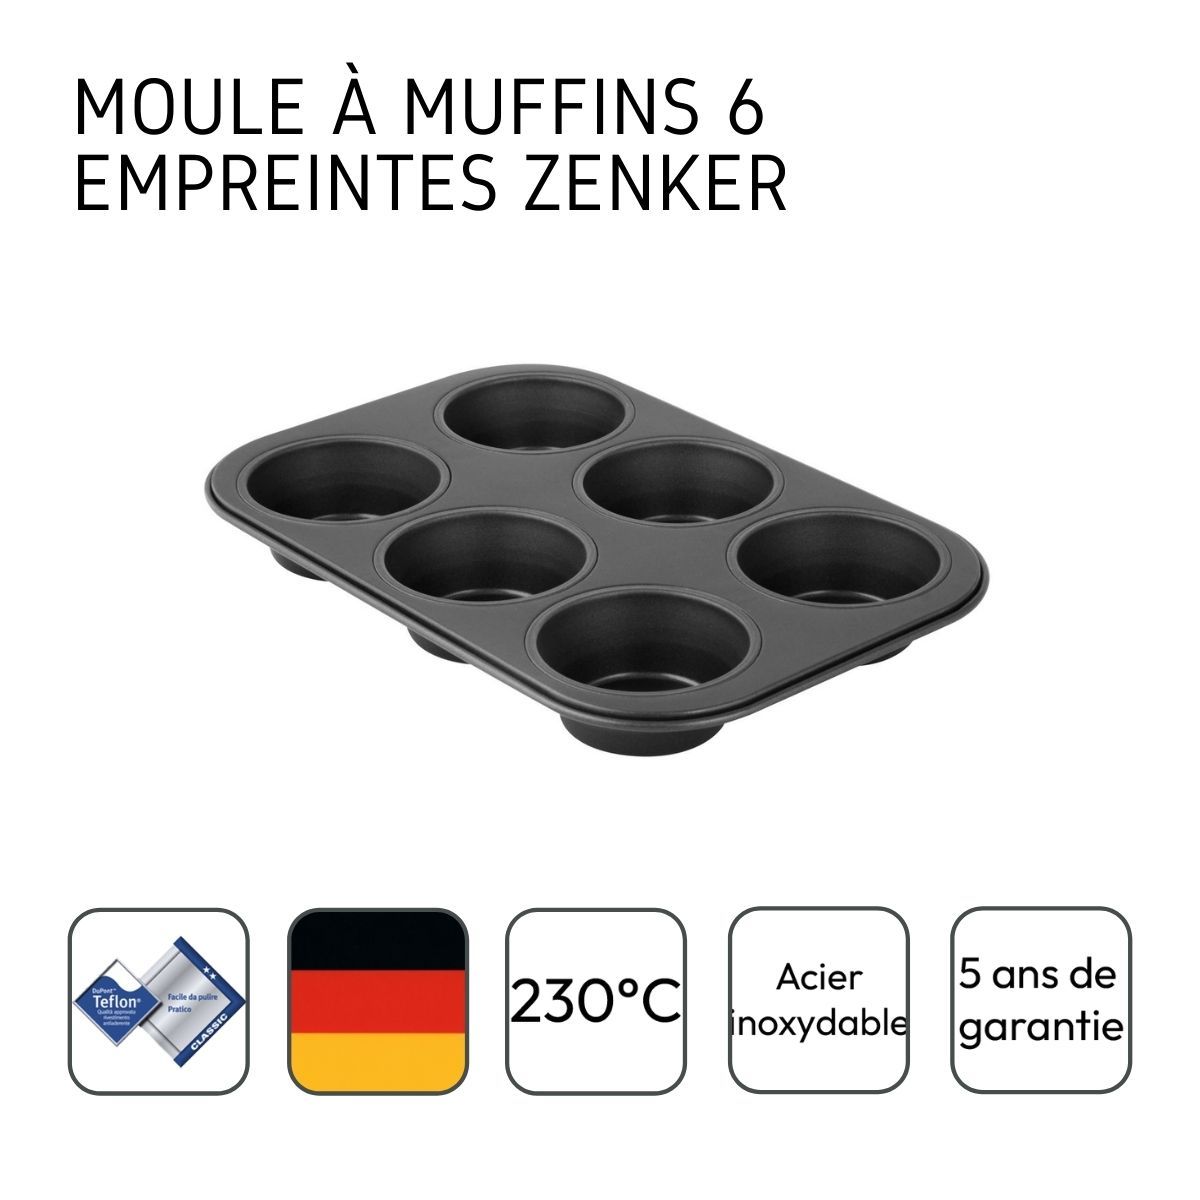 ACTUEL Moule à muffins x 9 en silicone 7 cm de diamètre pas cher